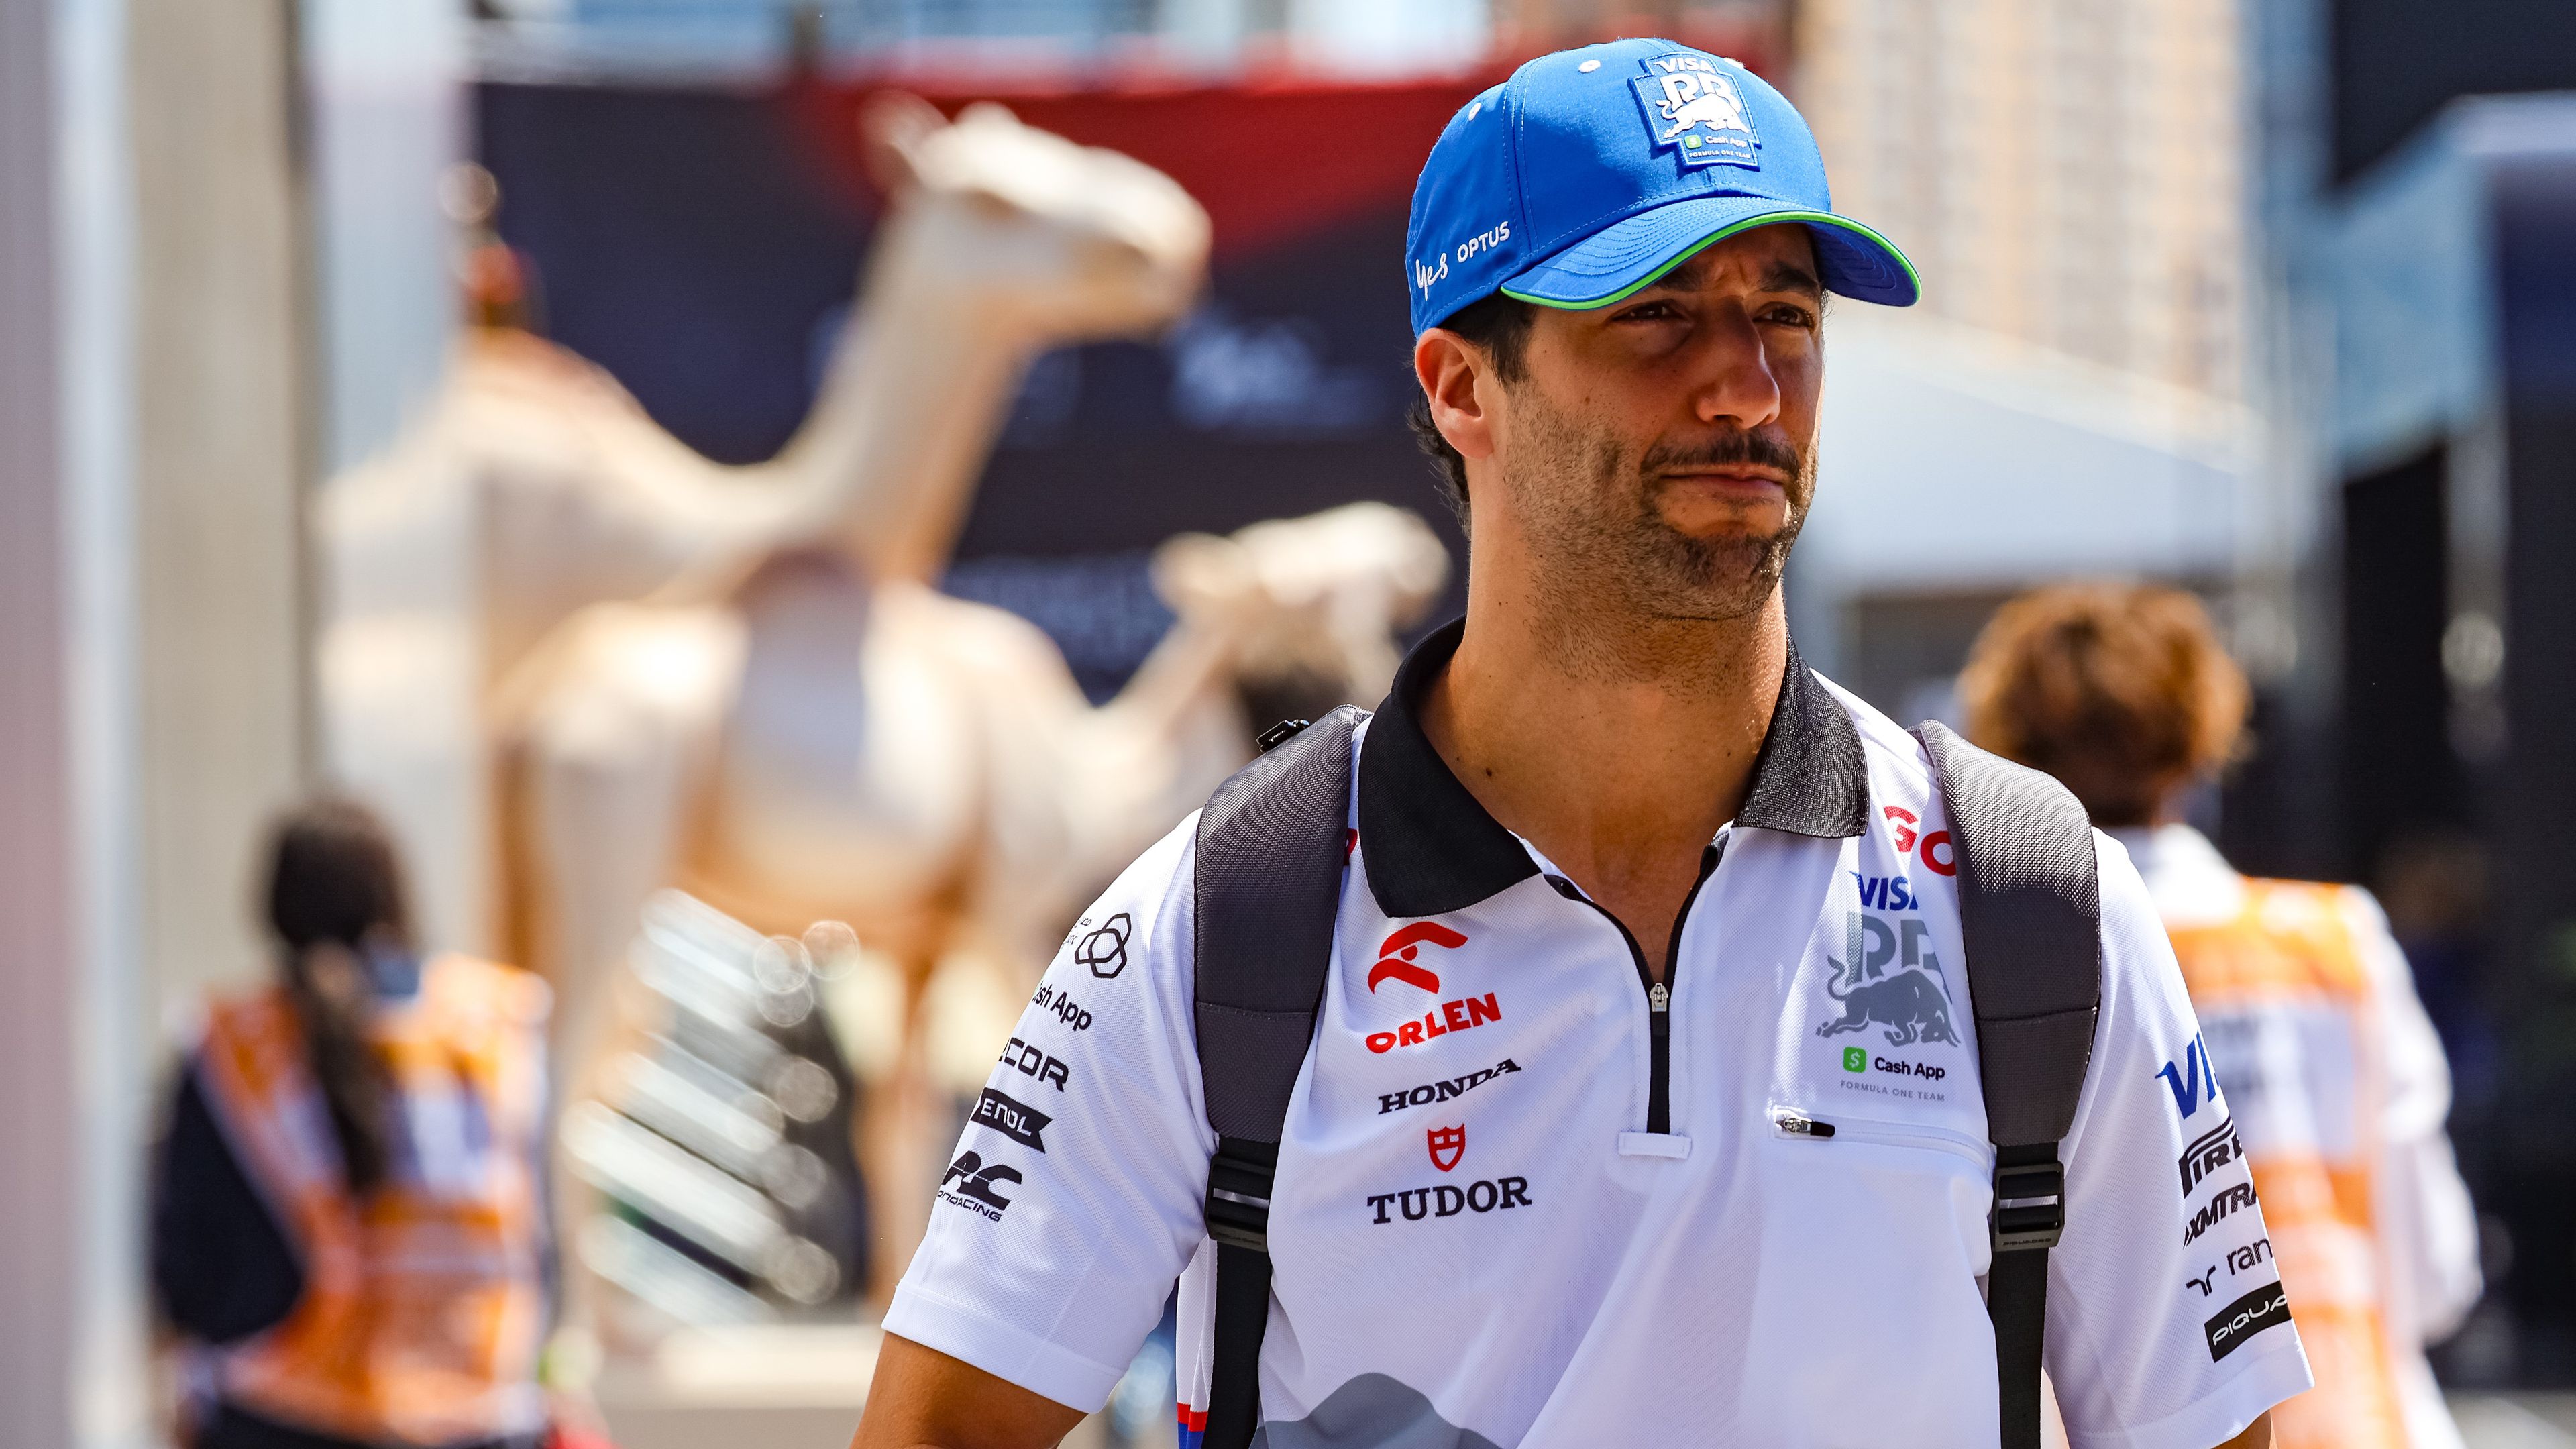 Daniel Ricciardonak jó teljesítményt kell idén nyújtania, különben nem csak a Red Bull, de más csapatok sem szerződtetik.